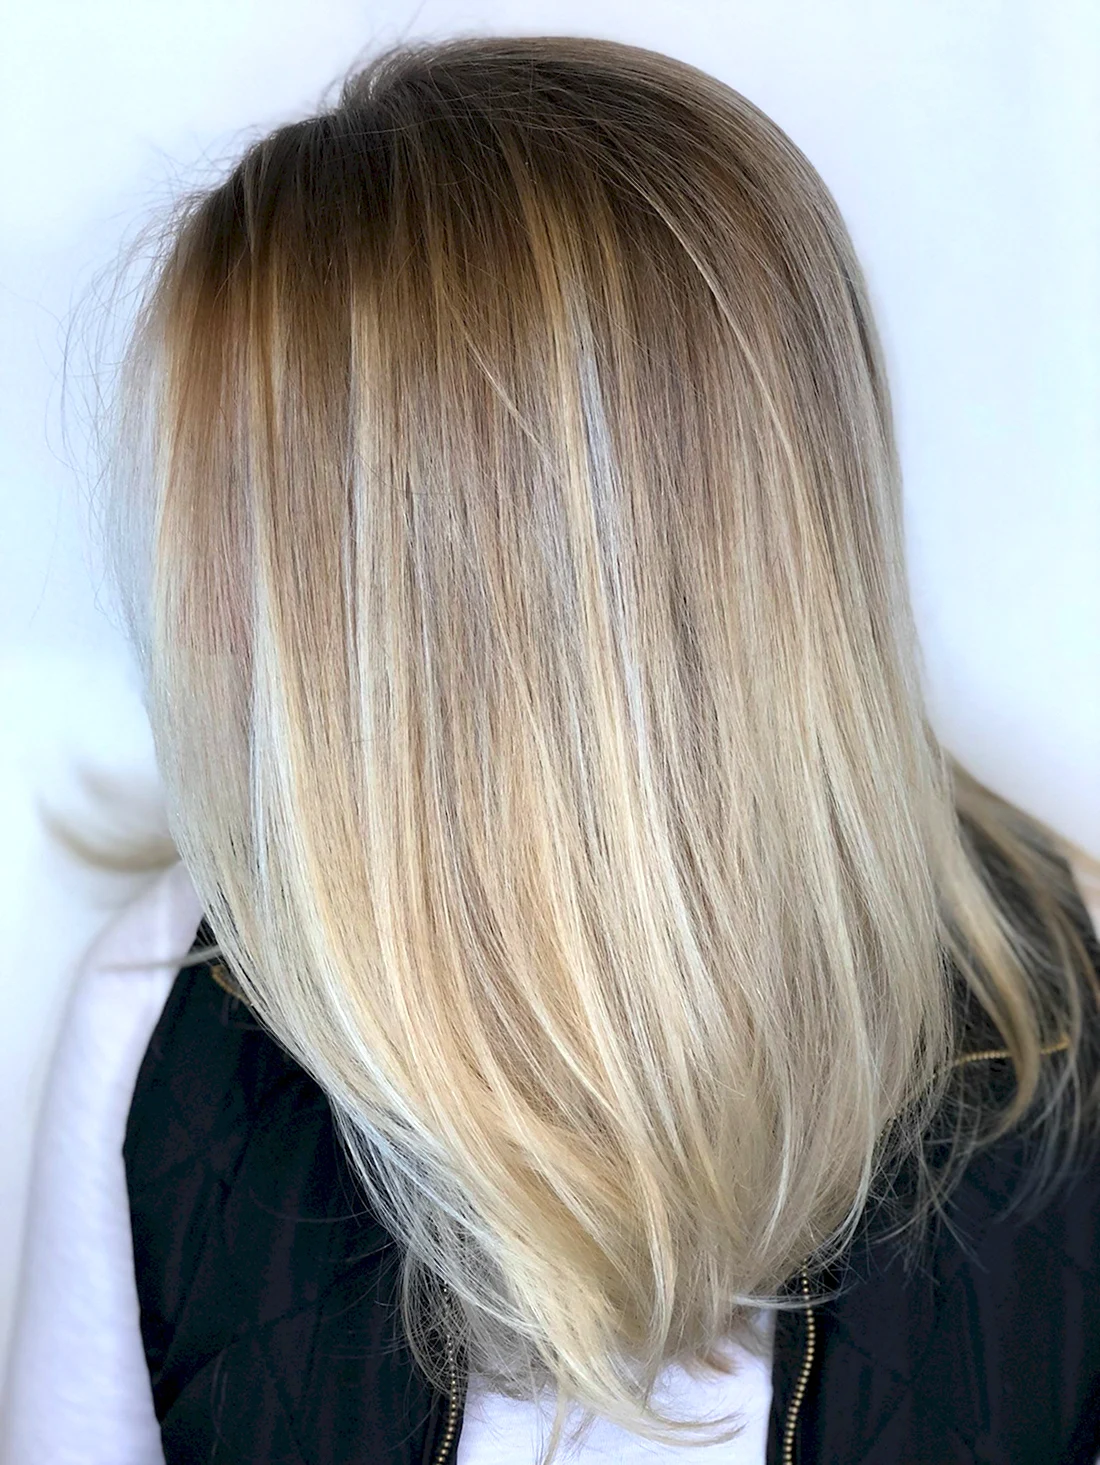 «Зимняя блондинка», или обратный балаяж — новое окрашивание, при котором волосы выглядят «дорого»